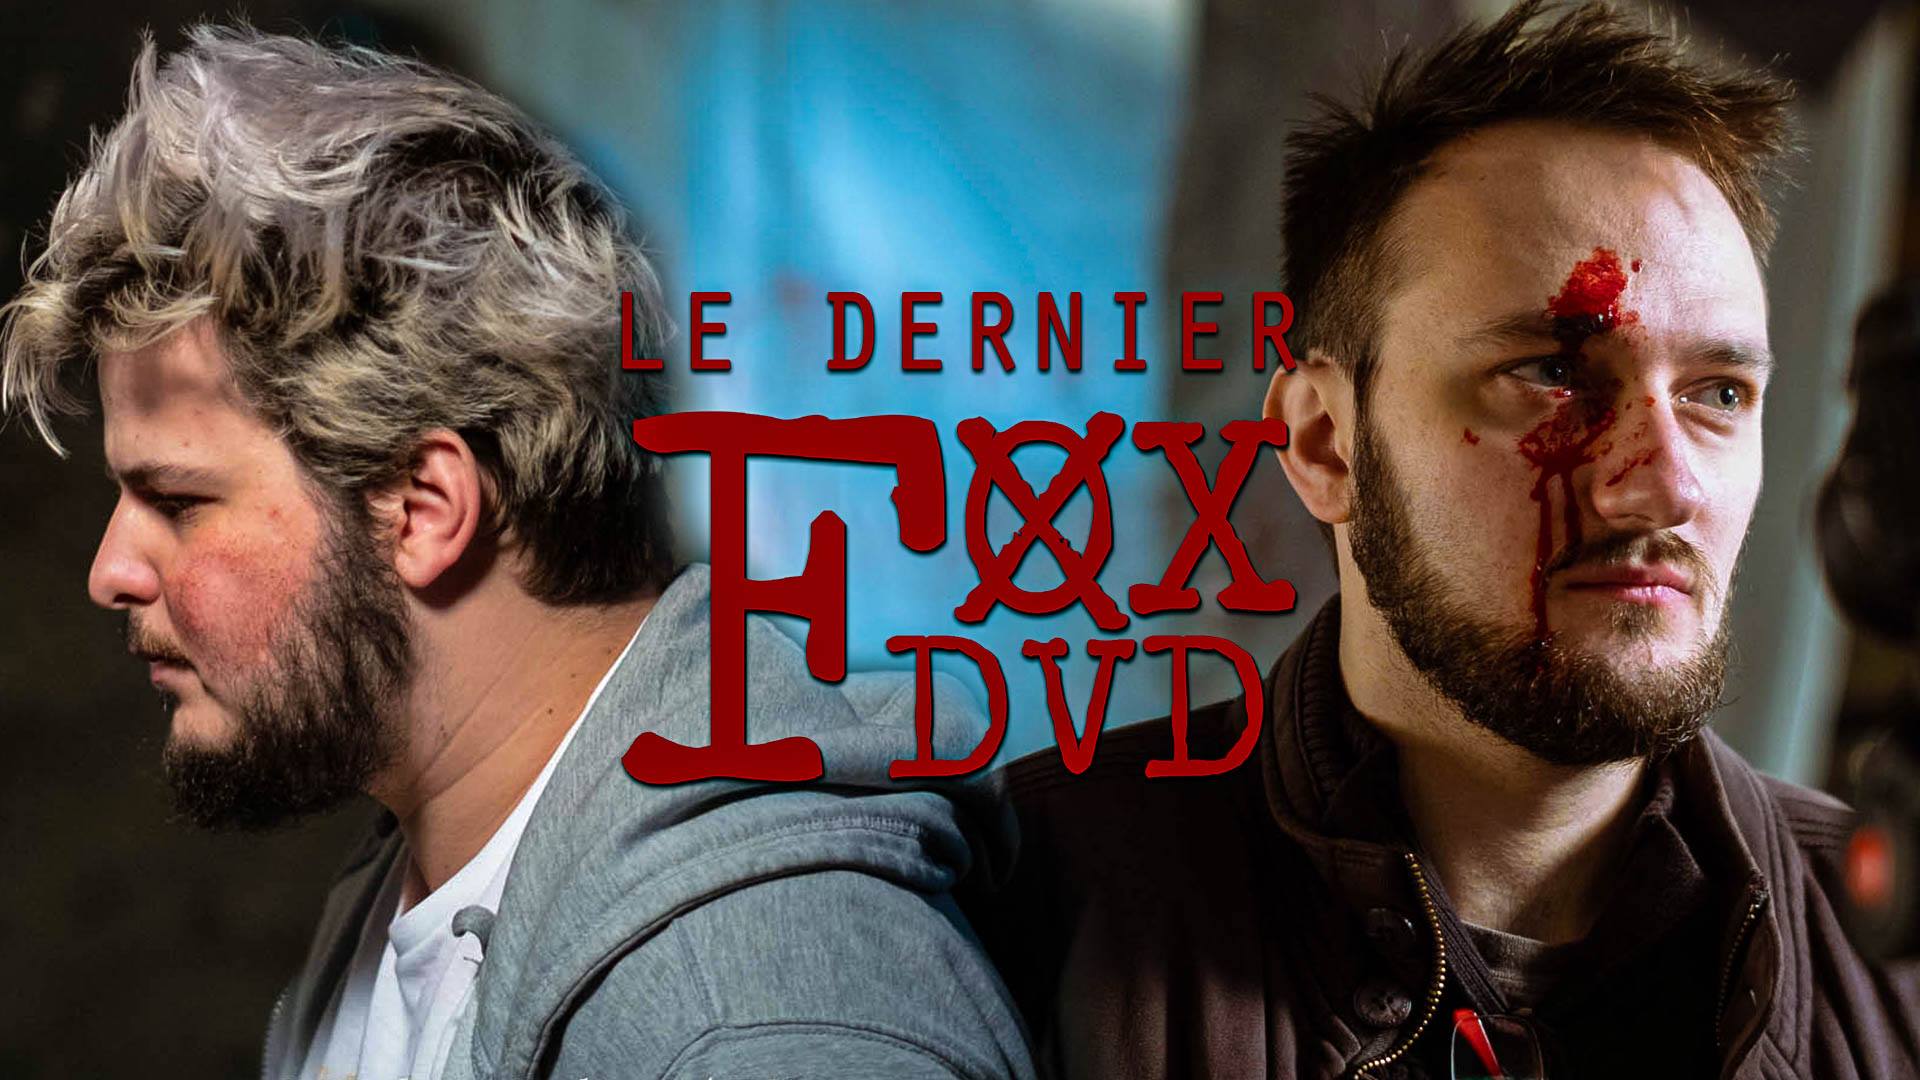 Le DERNIER Fox DVD